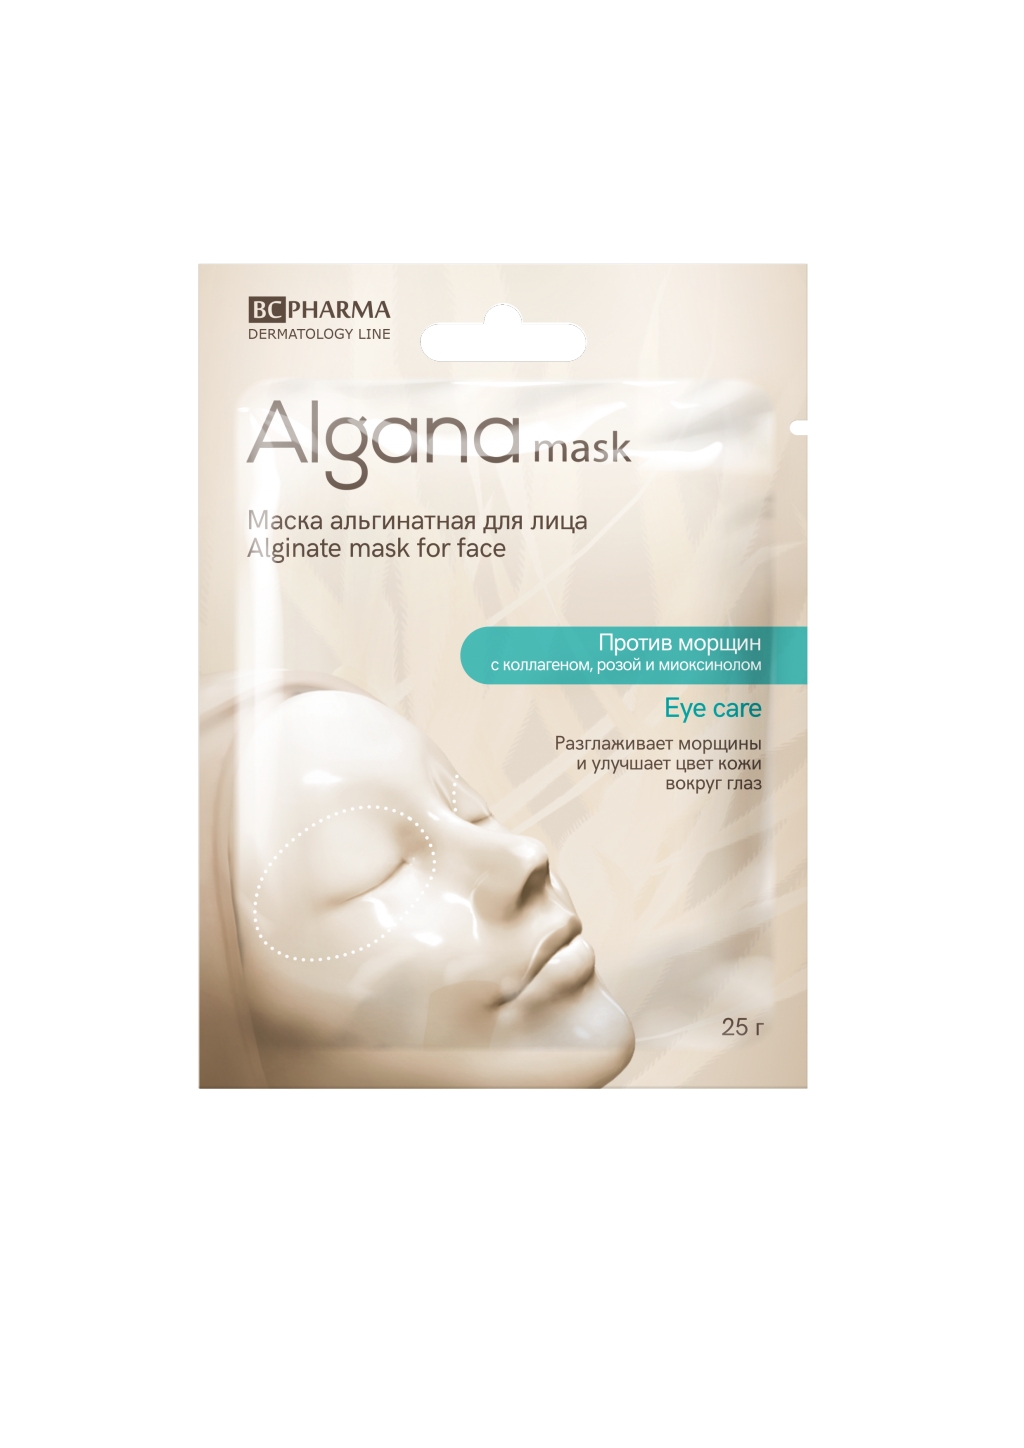 Альгинатная маска от Alganamask для кожи вокруг глаз "Skin Rescue"